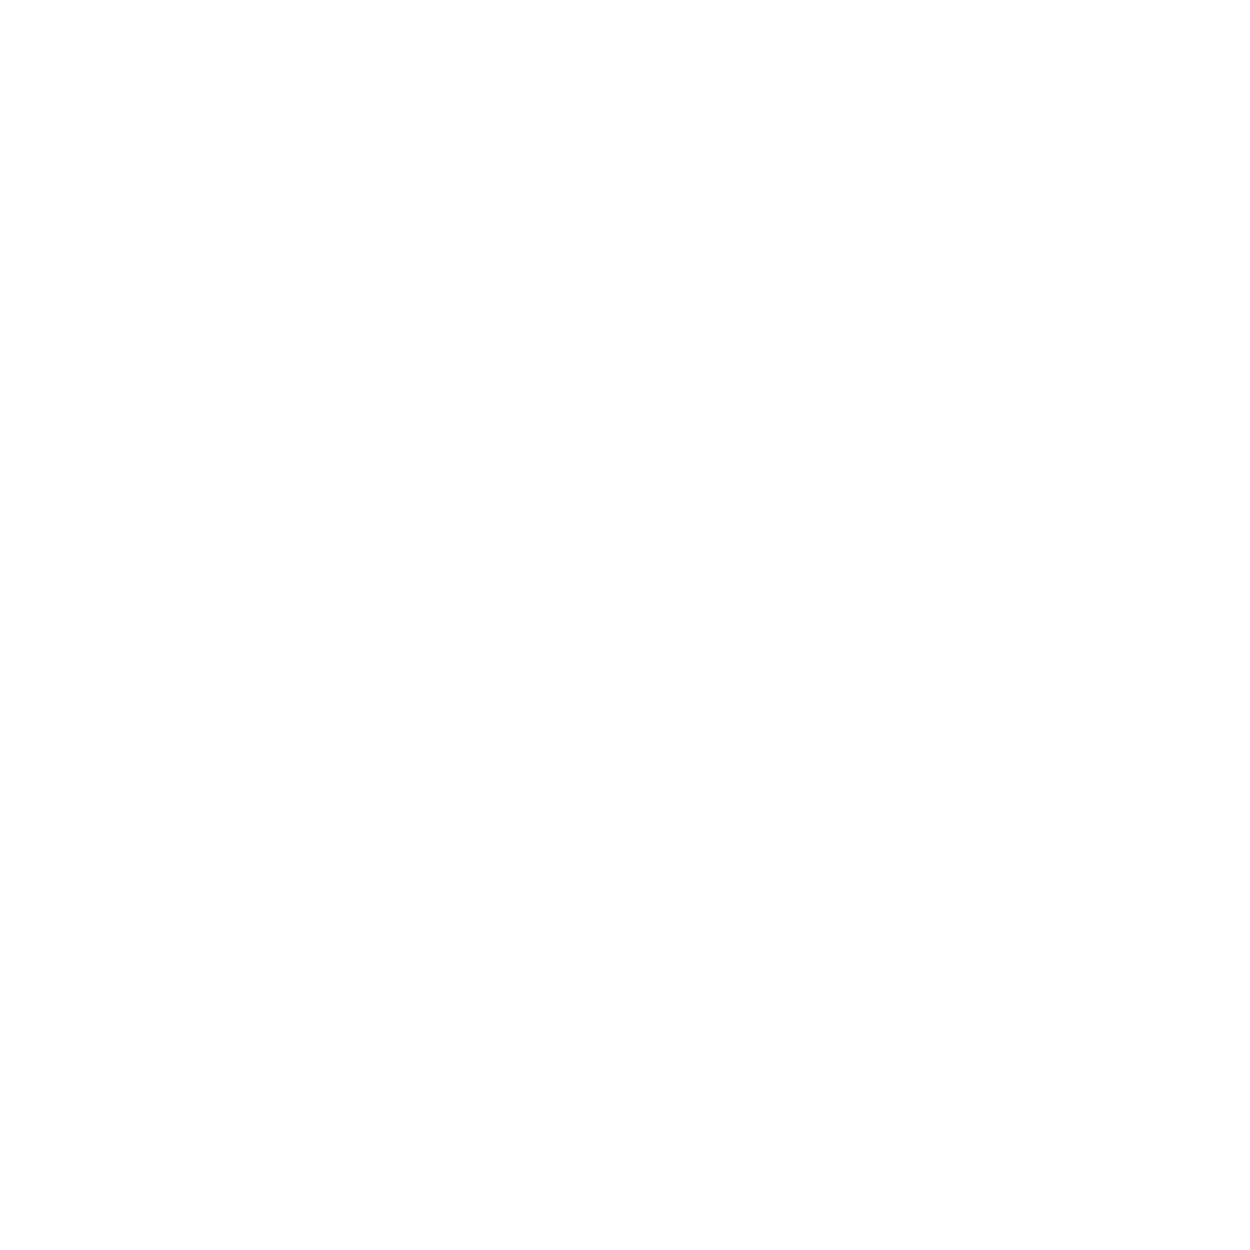 Costa de Cocos